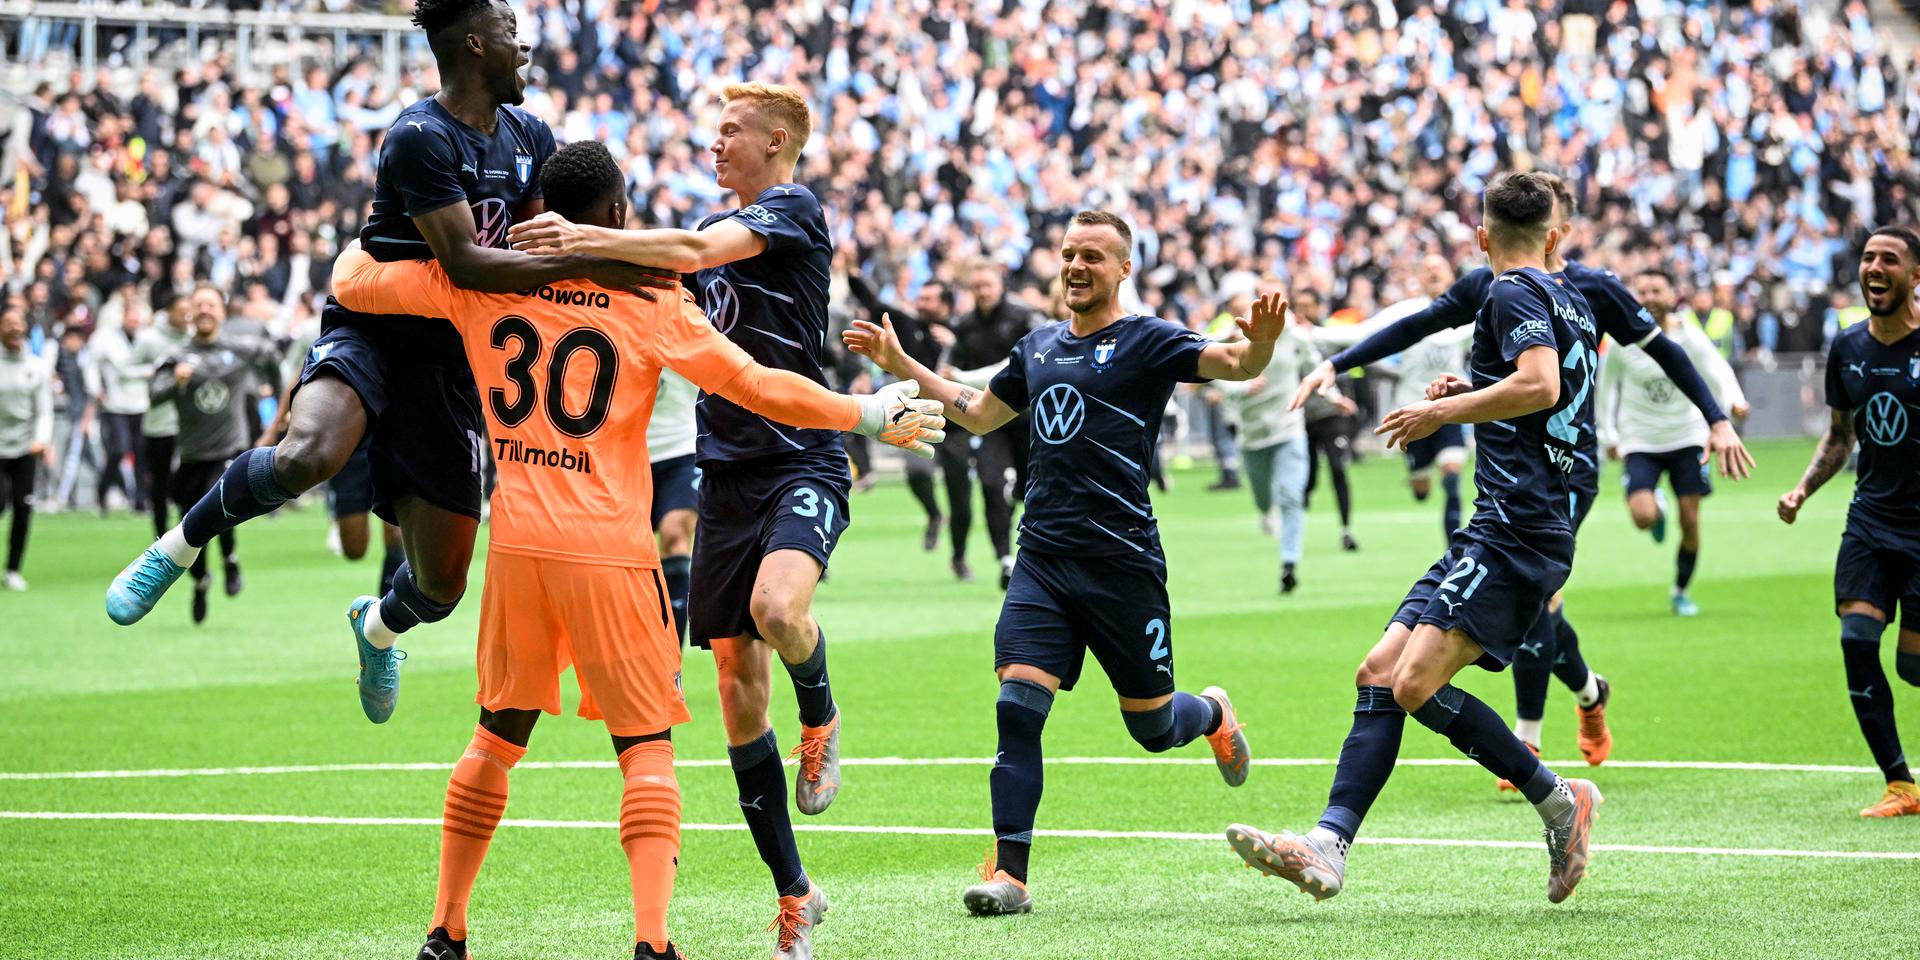 Malmös målvakt Ismael Diawara, nummer 30, firar segern i svenska cupen-finalen mot Hammarby på Tele2 arena i Stockholm.